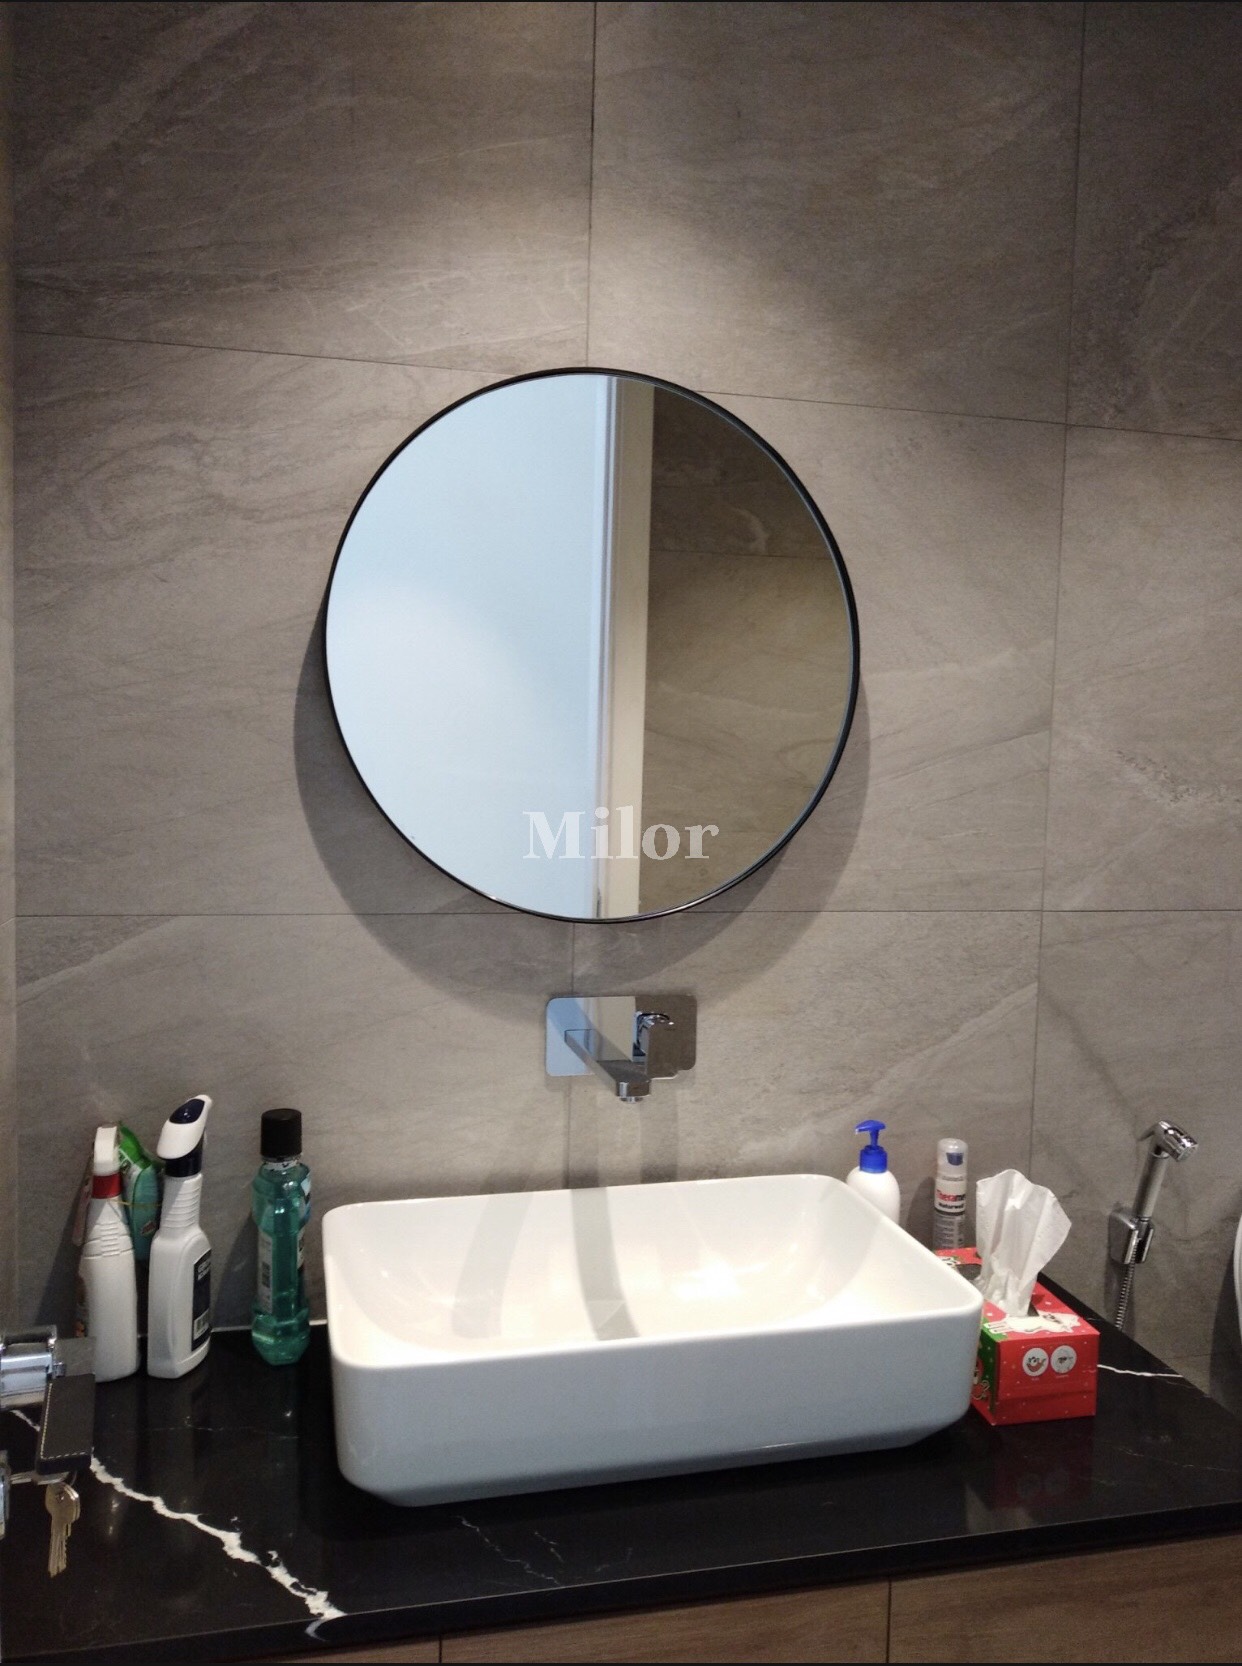 Gương phòng tắm tròn Optiama không chỉ là thiết bị cần thiết trong phòng tắm mà còn làm nổi bật không gian phòng tắm của bạn. Với đèn LED tiết kiệm điện và kích thước vừa phải, chiếc gương này thực sự là một sản phẩm tuyệt vời cho không gian phòng tắm của bạn. Hãy cùng khám phá vẻ đẹp và chất lượng của Gương phòng tắm tròn Optiama qua hình ảnh liên quan.